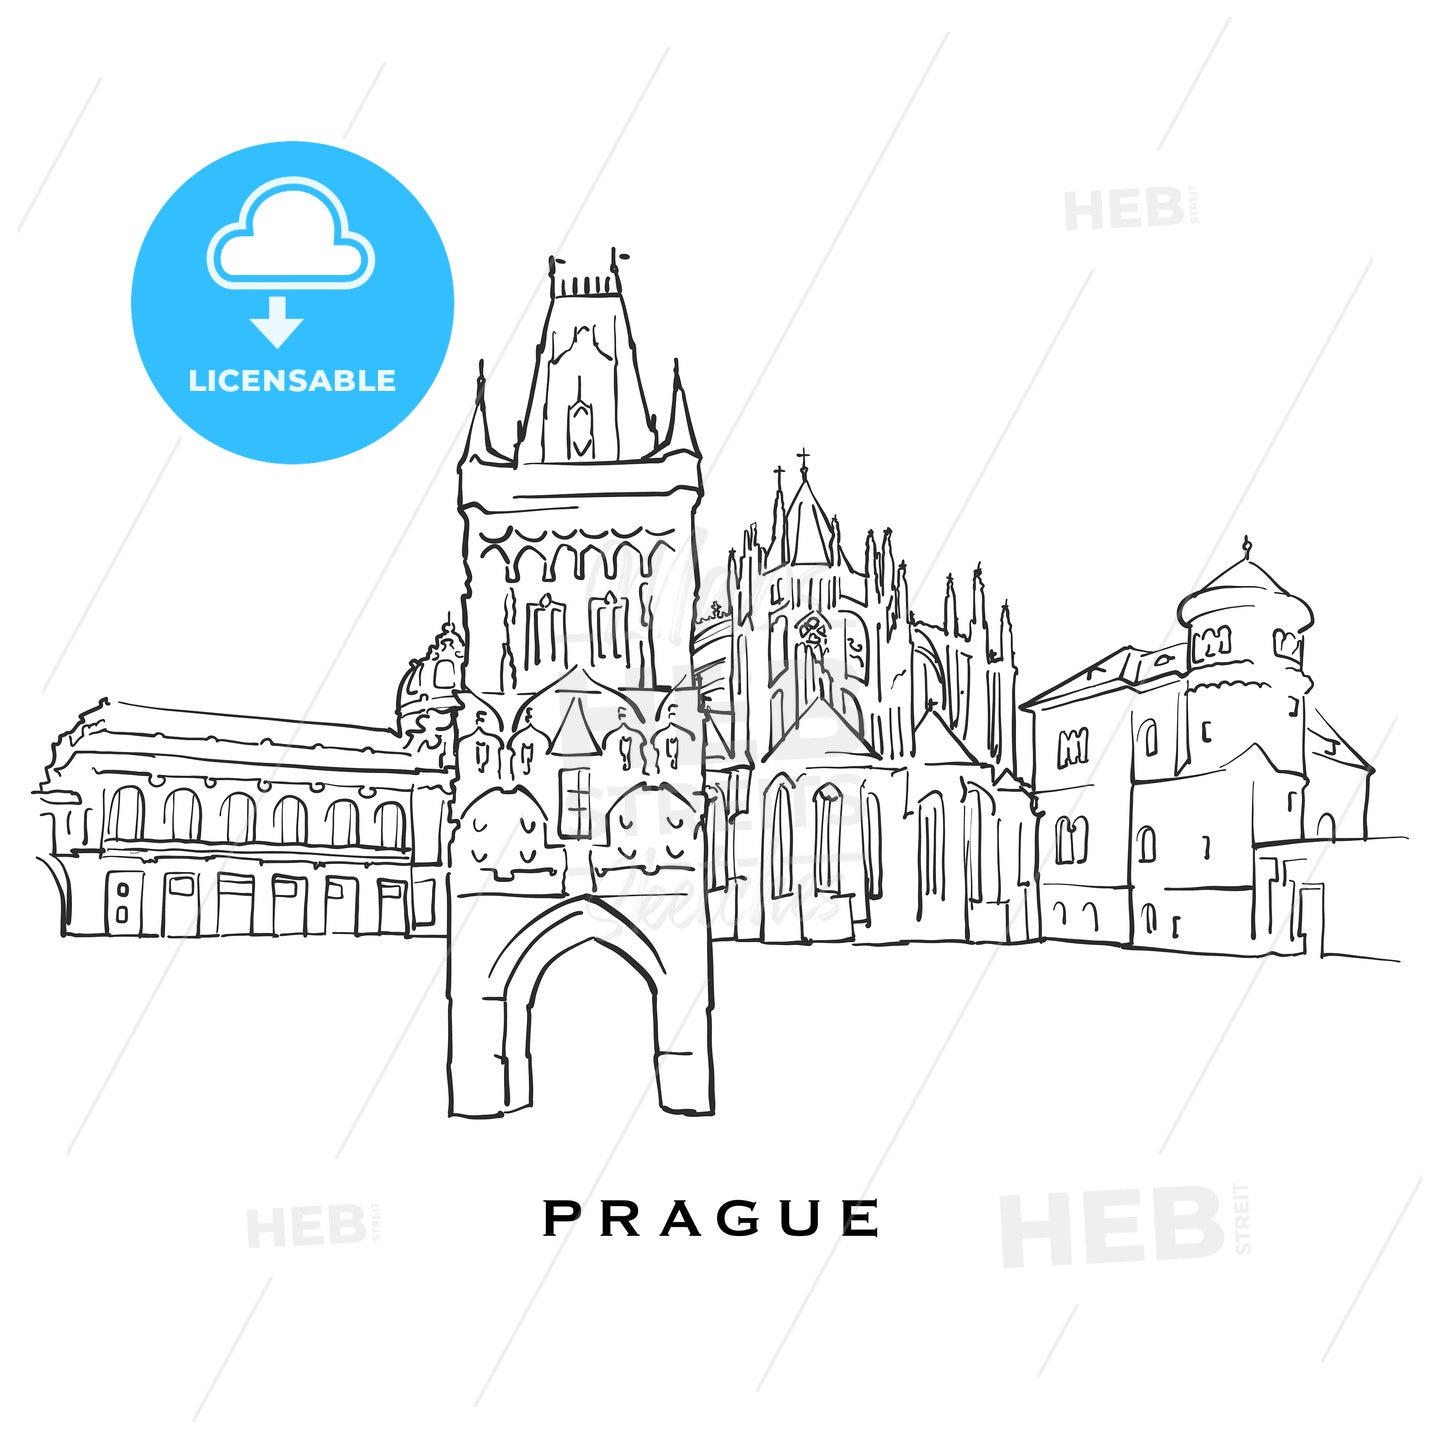 Prague Czech Republic famous architecture – instant download